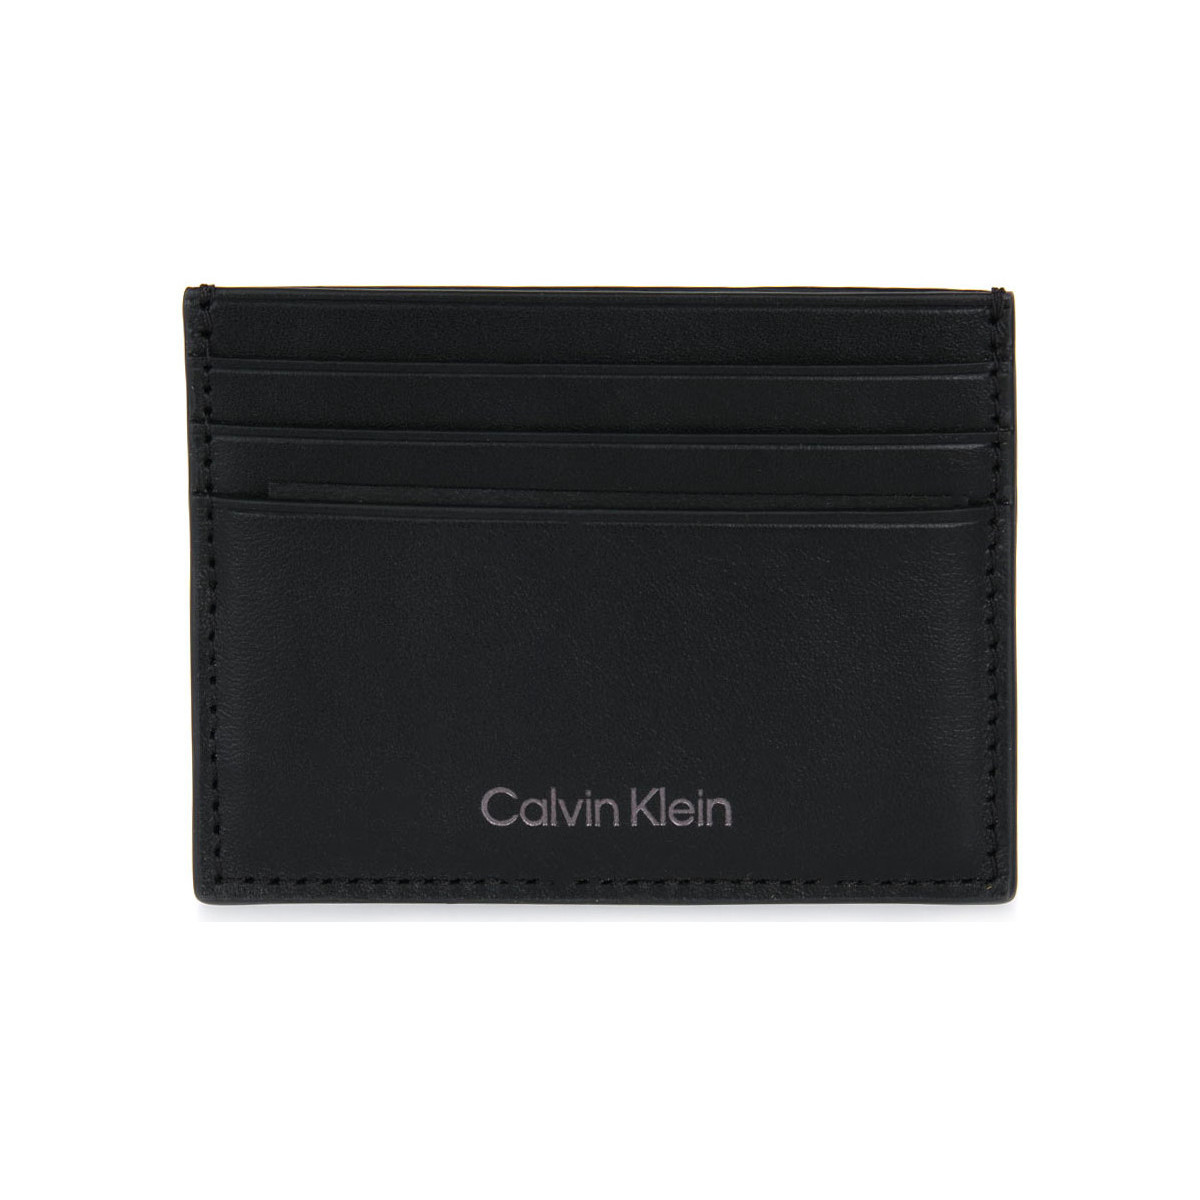 Sacs Femme Sacs Calvin Klein Jeans BAX CARD HOLDER Noir